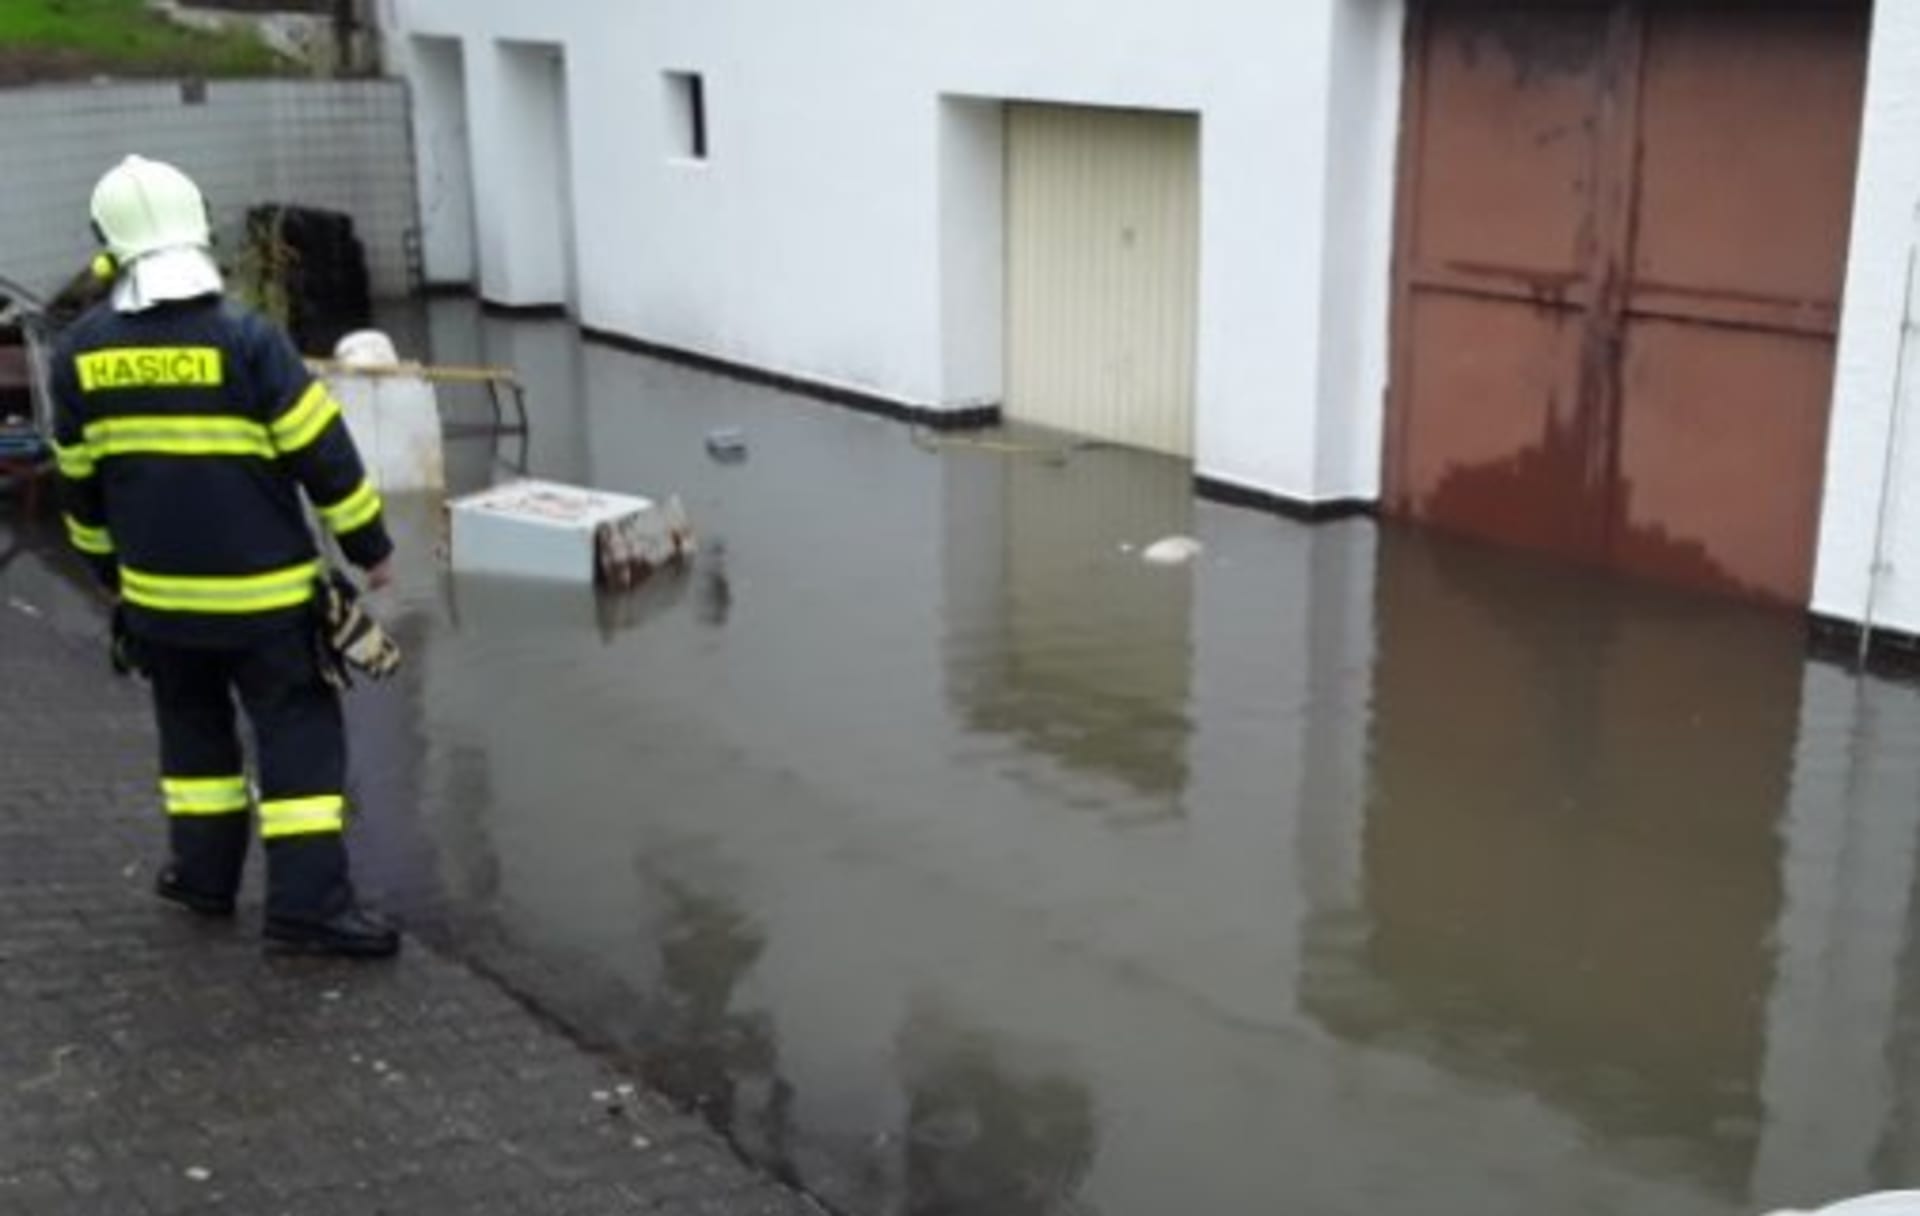  Vodní laguna v hotelu Impuls v Liberci ohrozila centrální elektrický rozvaděč ve sklepě. Hasiči za použití plovoucích čerpadel odčerpávali vodu.